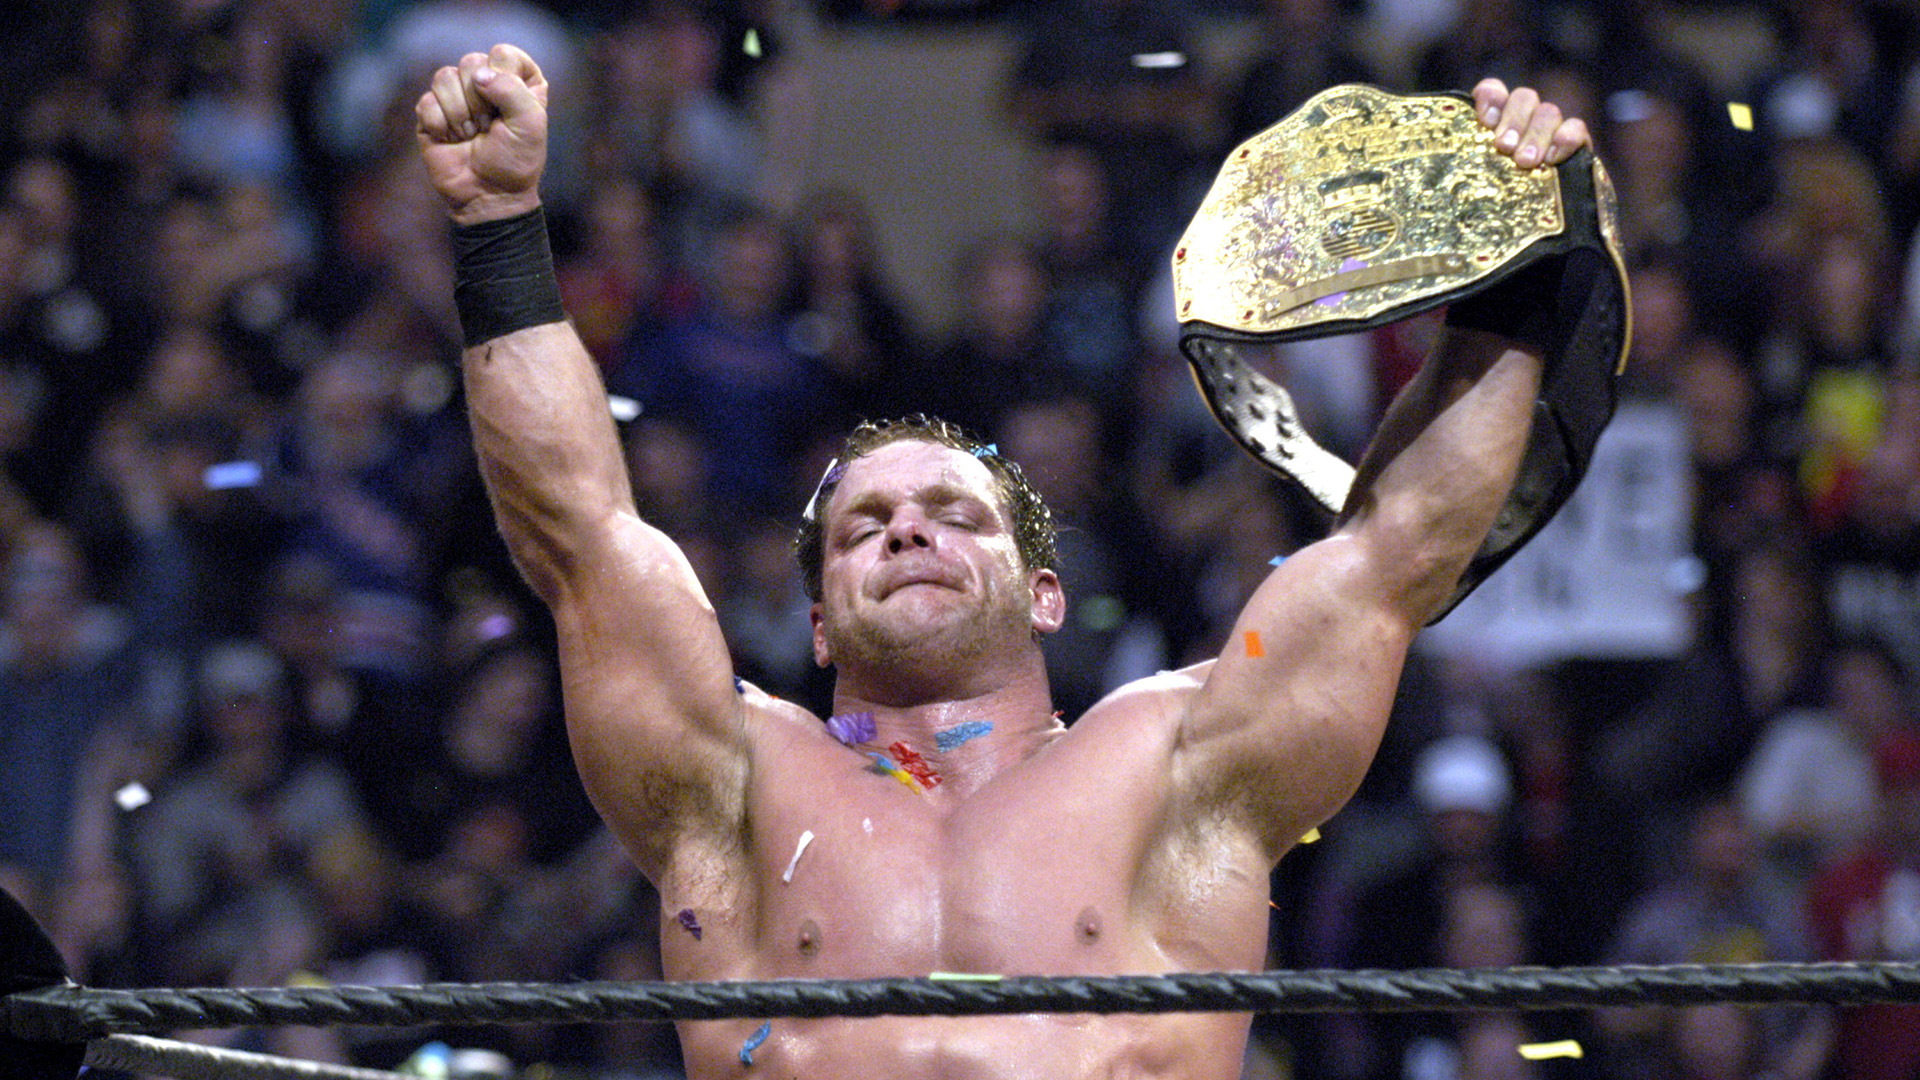 Chris Benoit era una de las máximas figuras de la WWE, la compañía de lucha libre más famosa de Norteamérica (Getty Images)